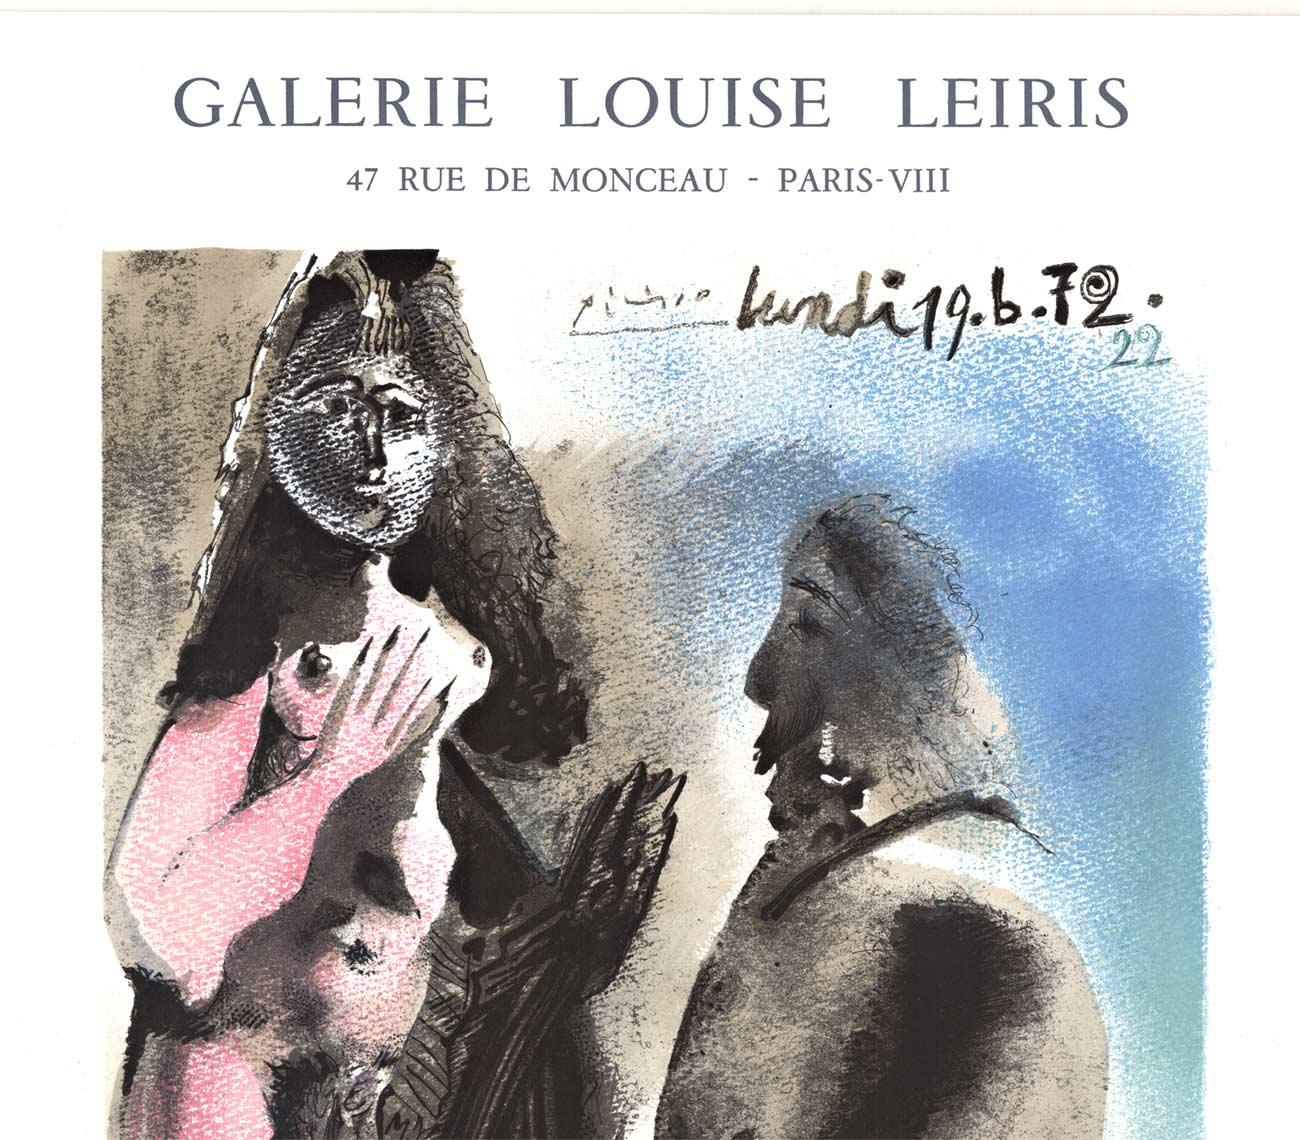 Galerie Louise Leiris - Affiche vintage d'exposition - Print de Pablo Picasso